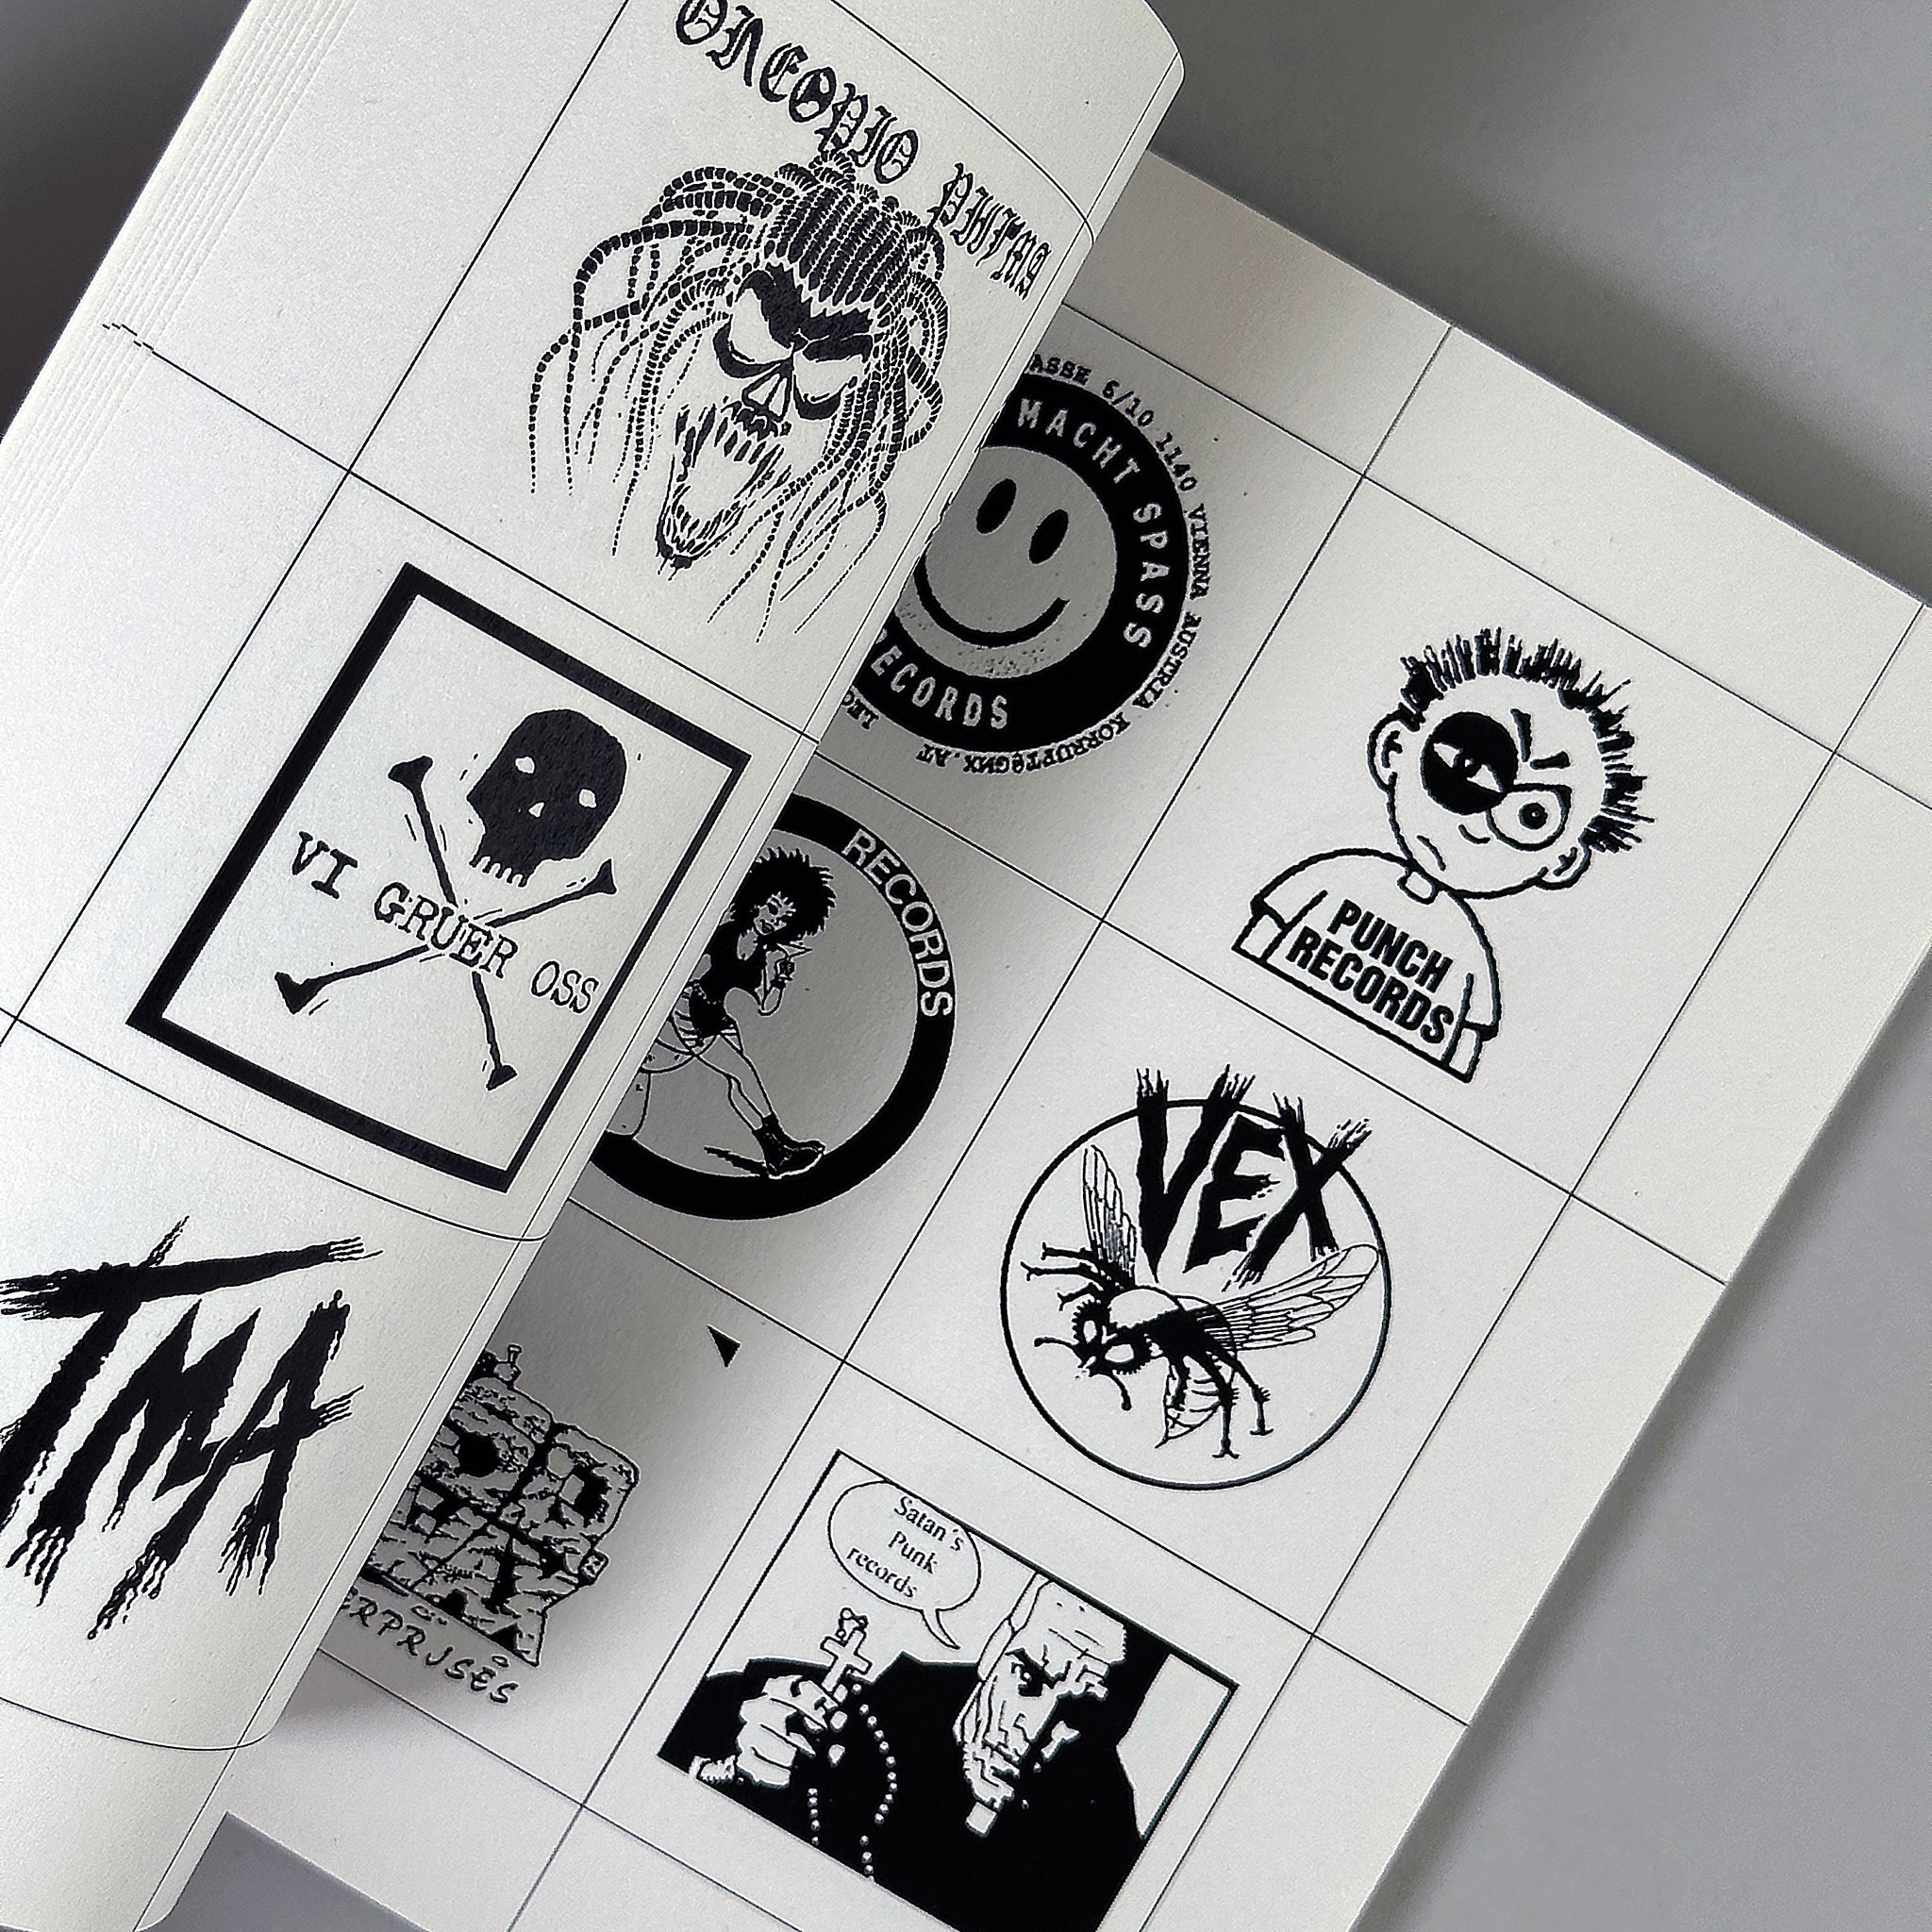 Punk Logos (1970-2020)